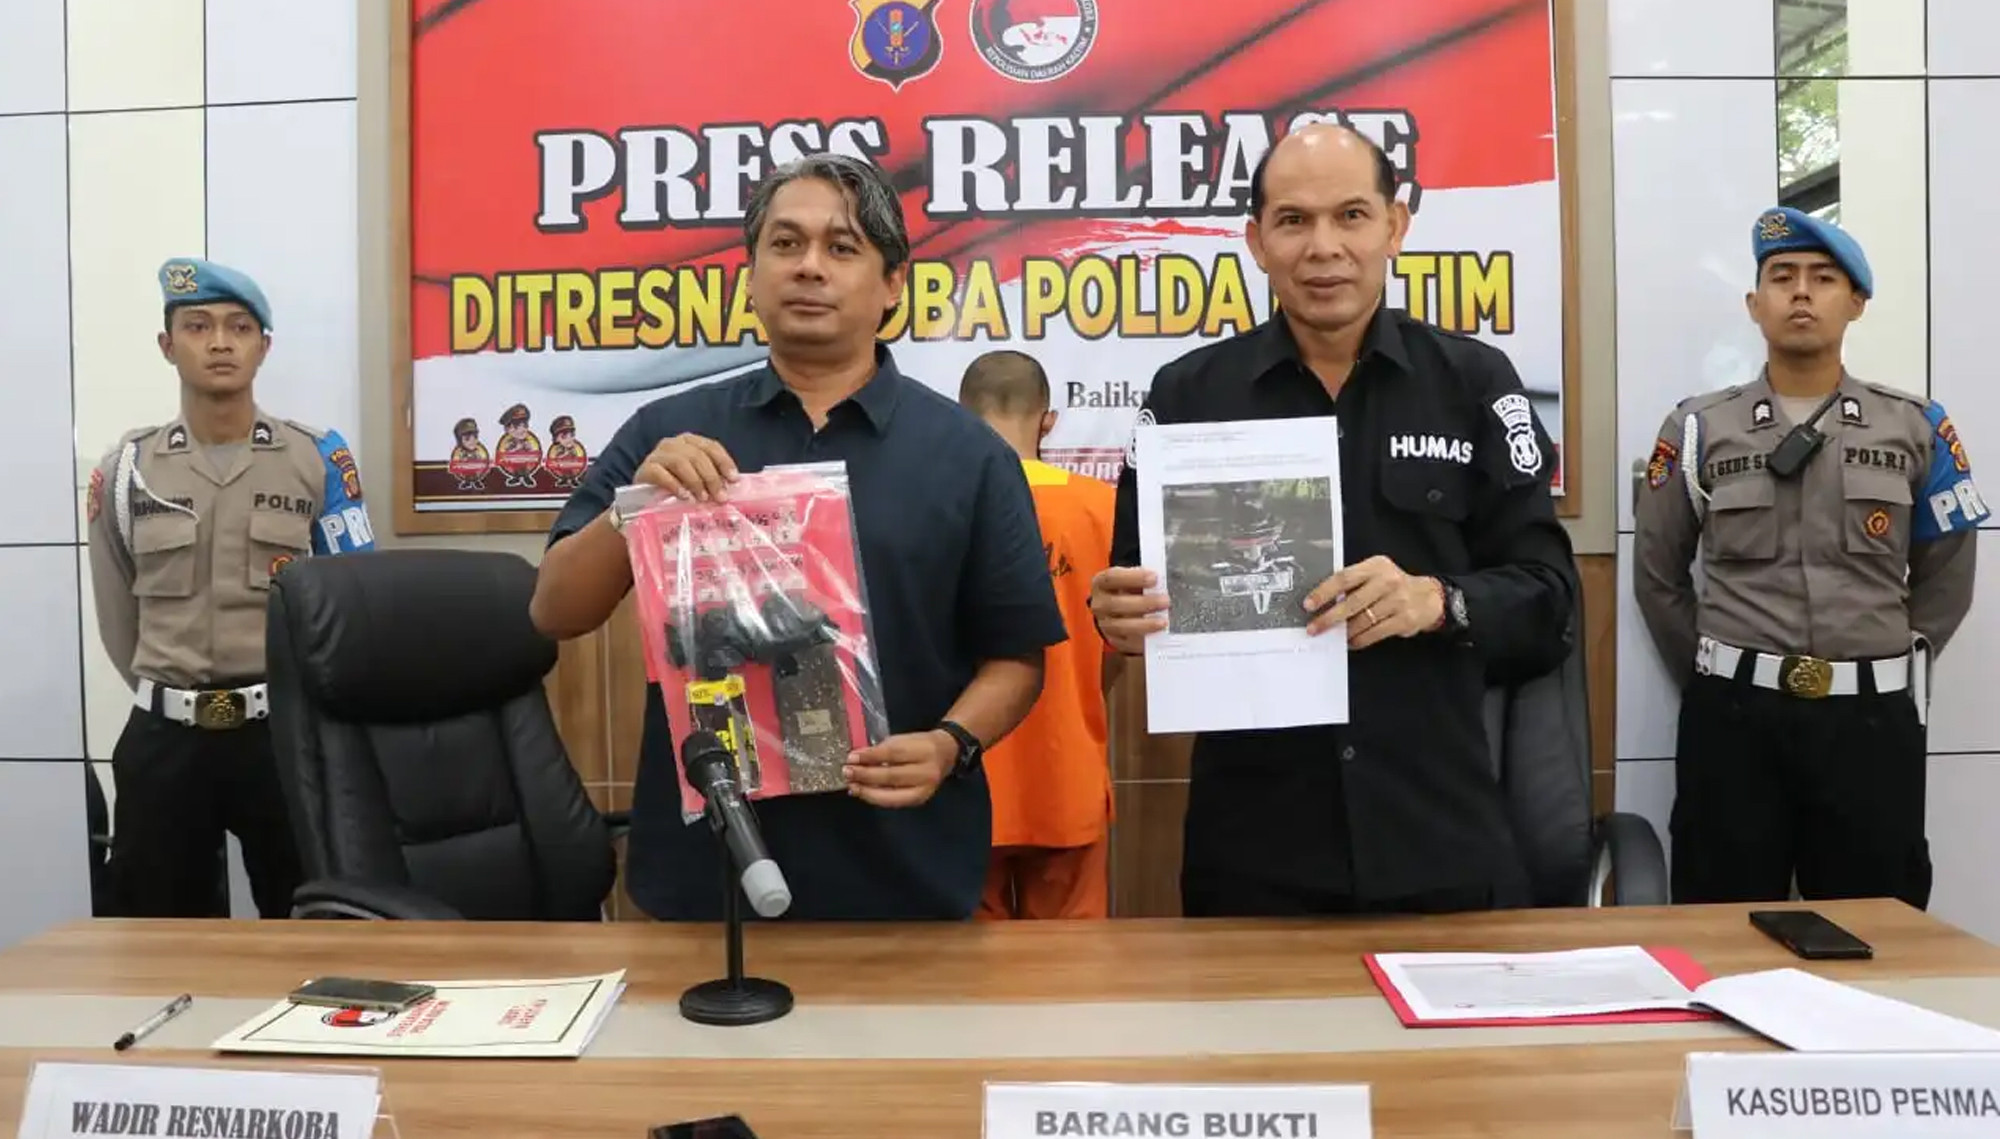  Seorang Pria Ditangkap Polisi di Sekitar Lokasi IKN Nusantara, Ternyata Ini Kasusnya - JPNN.com Kaltim